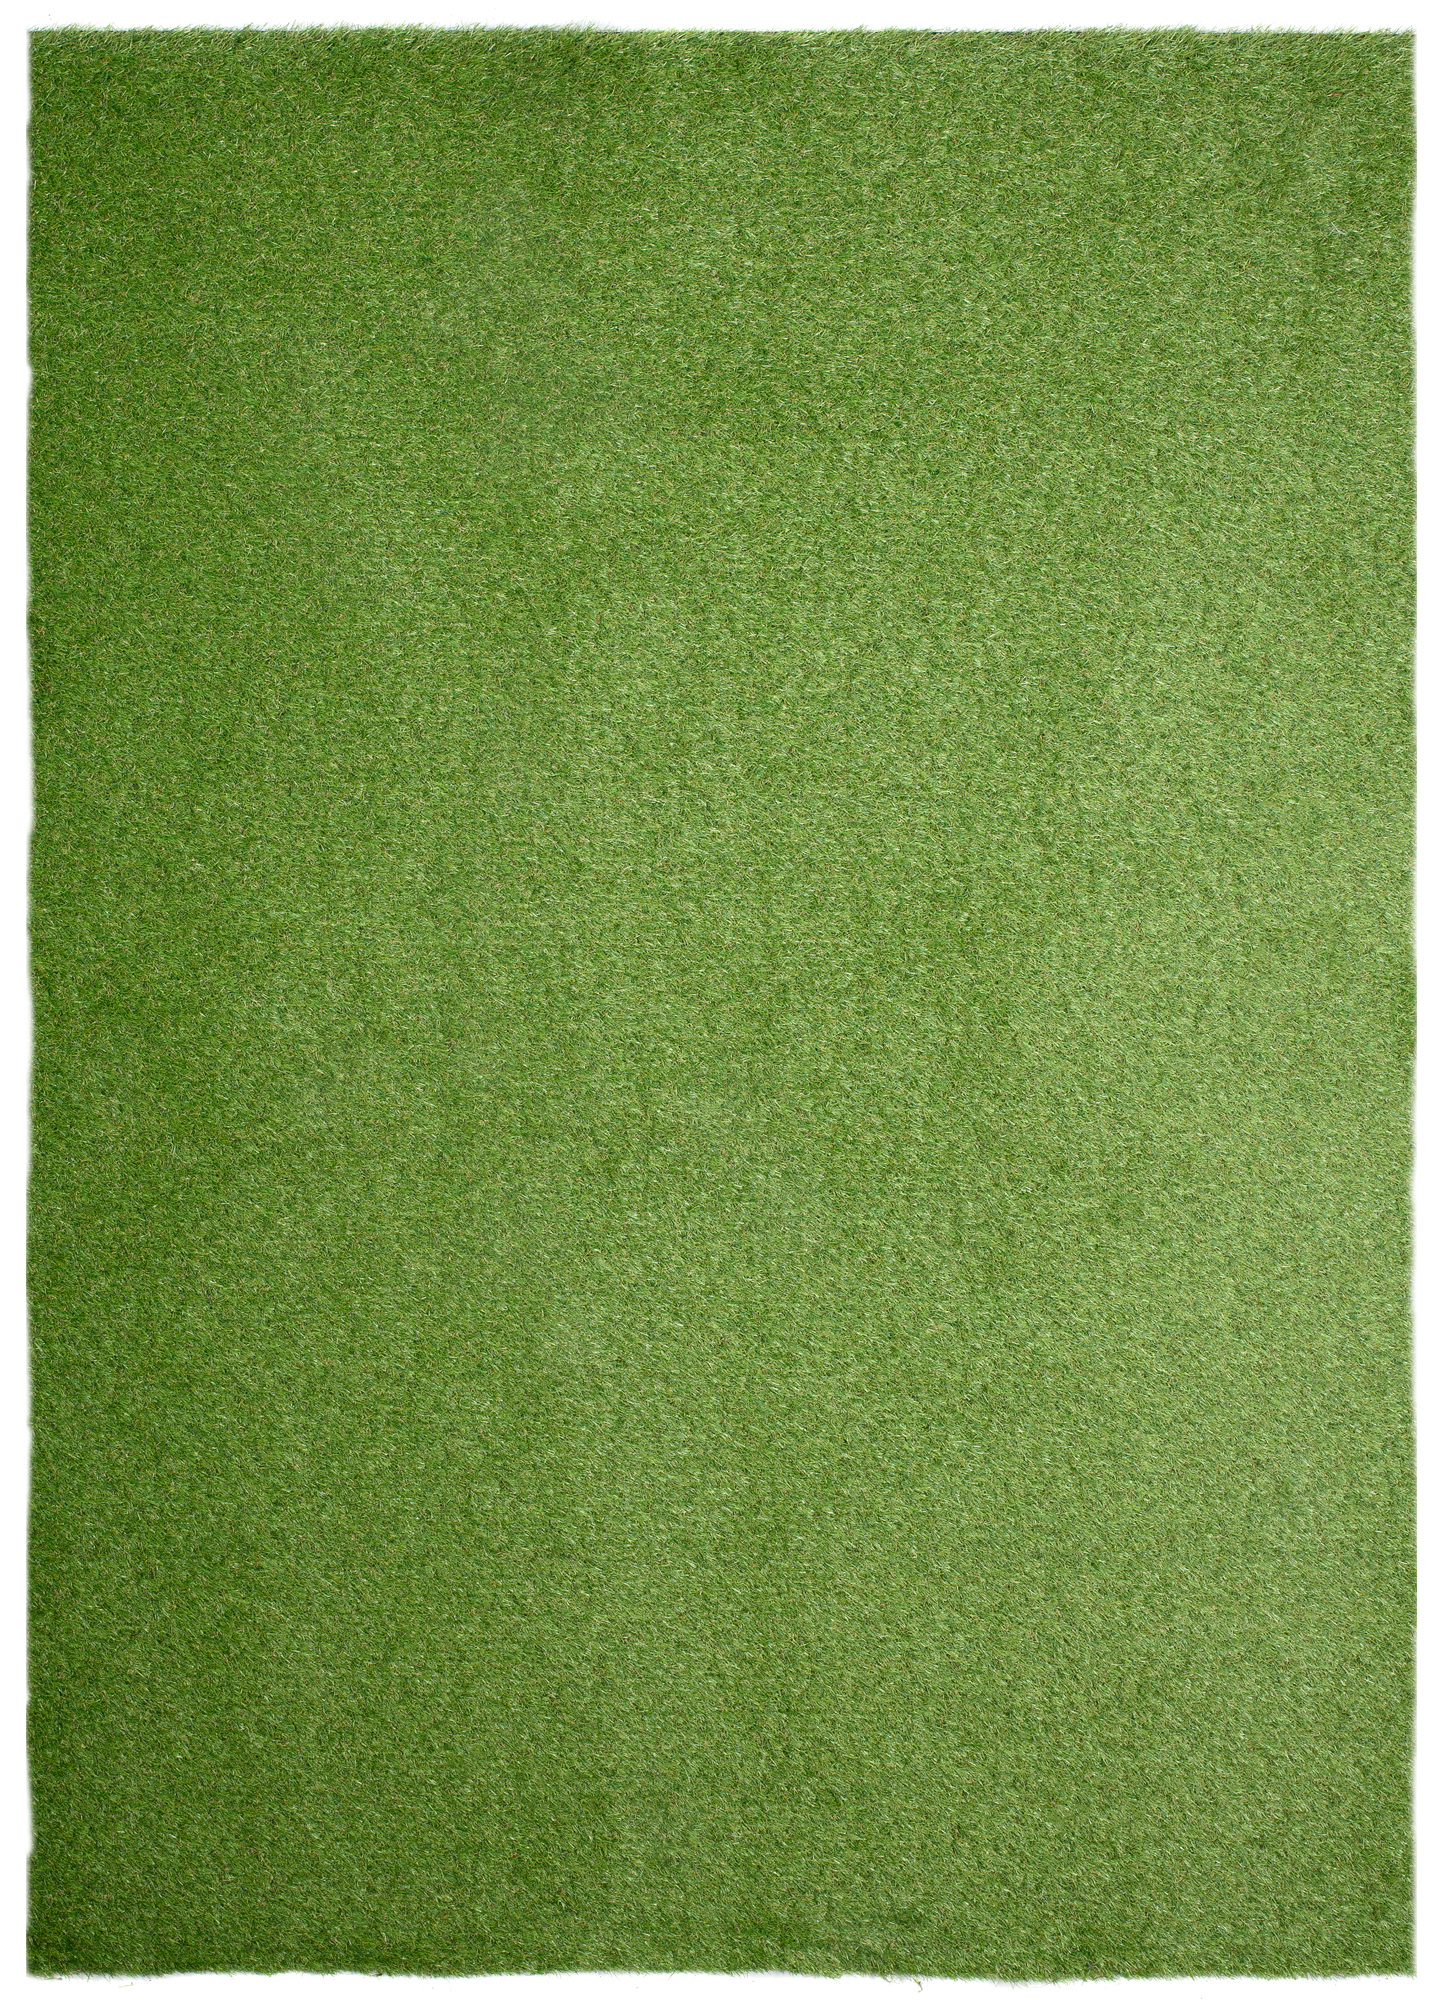 Sztuczna trawa 40mm pine valley mar (po) 7025 kolor zielony